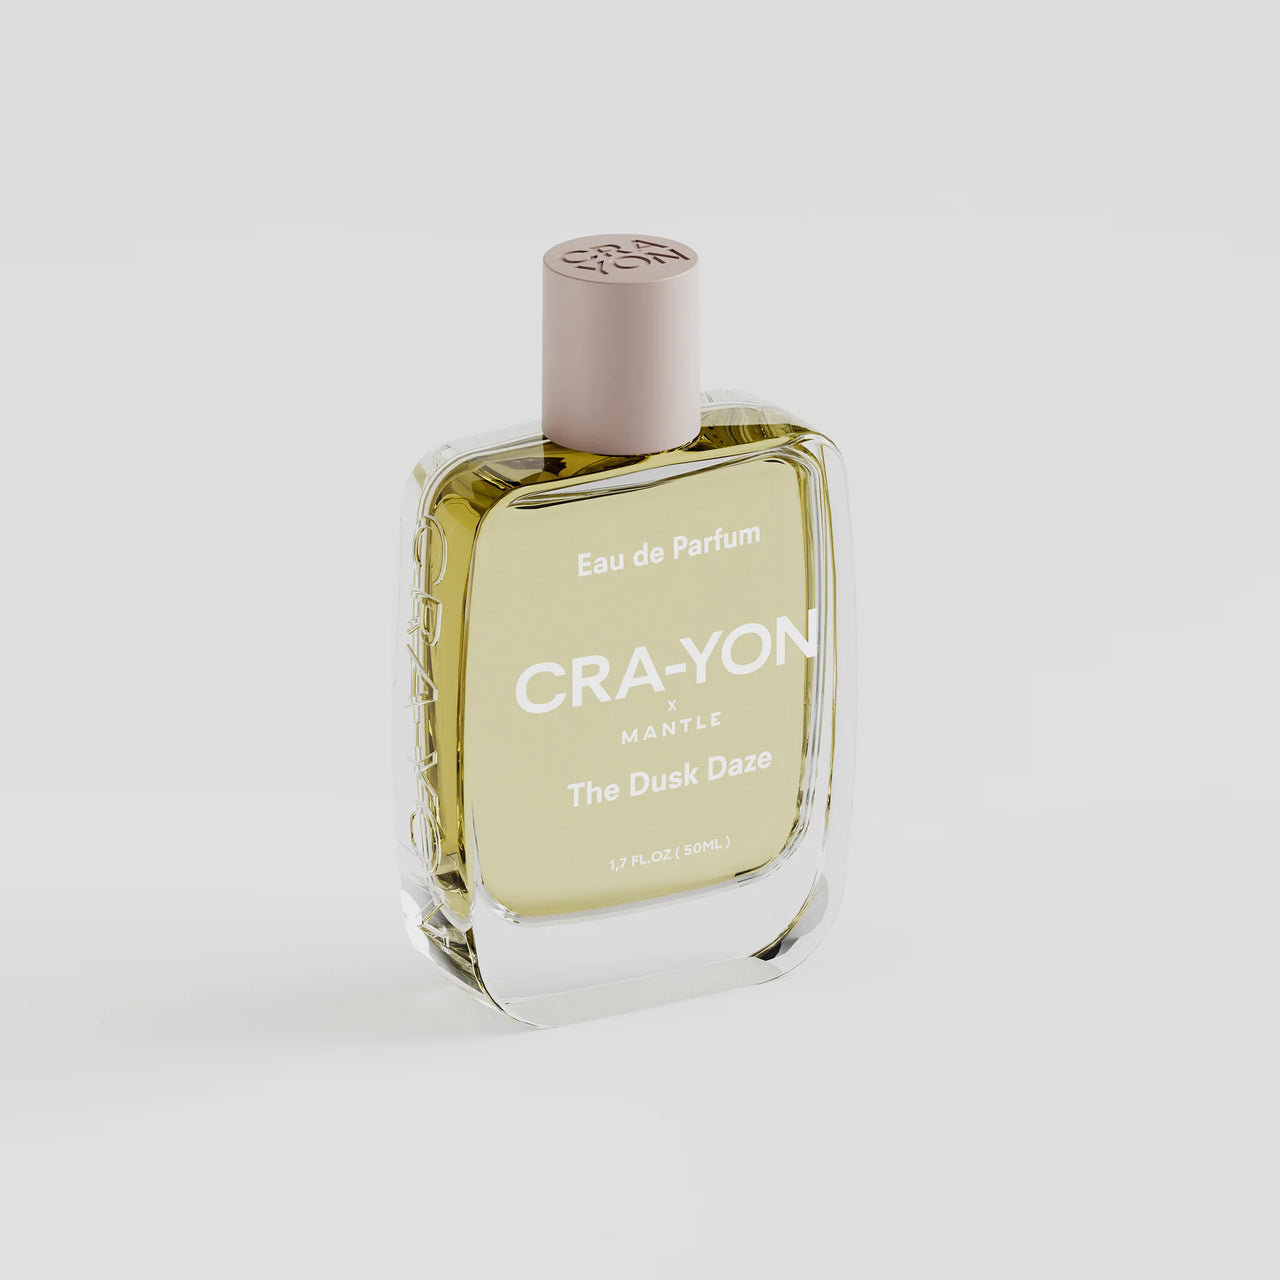 CRA-YON The Dusk Daze Eau de Parfum